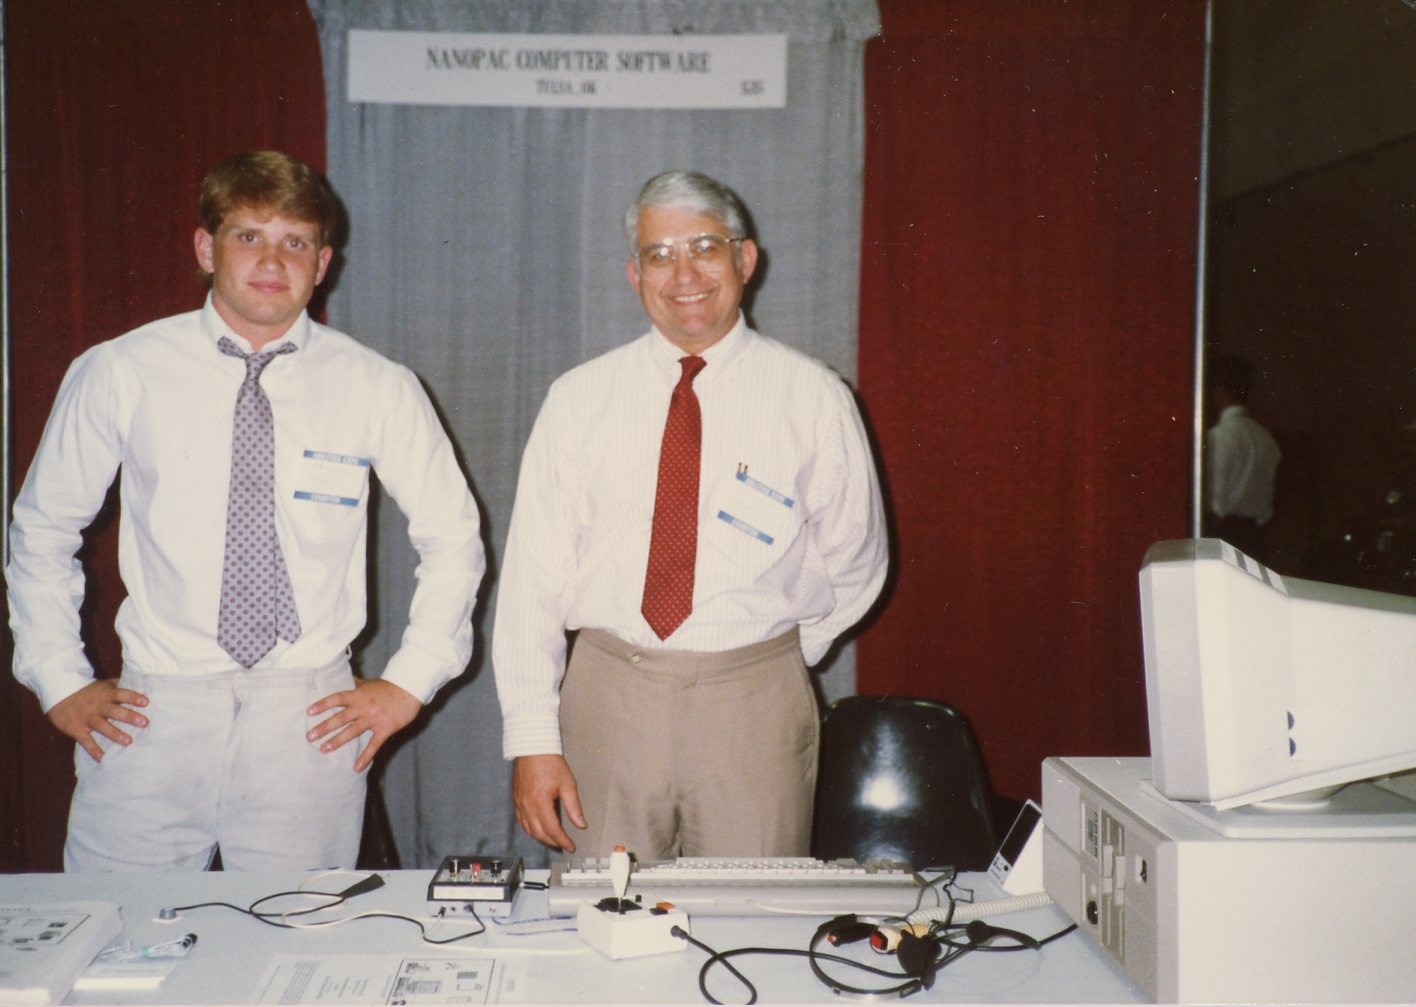 Steve and Silvio Cianfrone at a Tradeshow in 1989